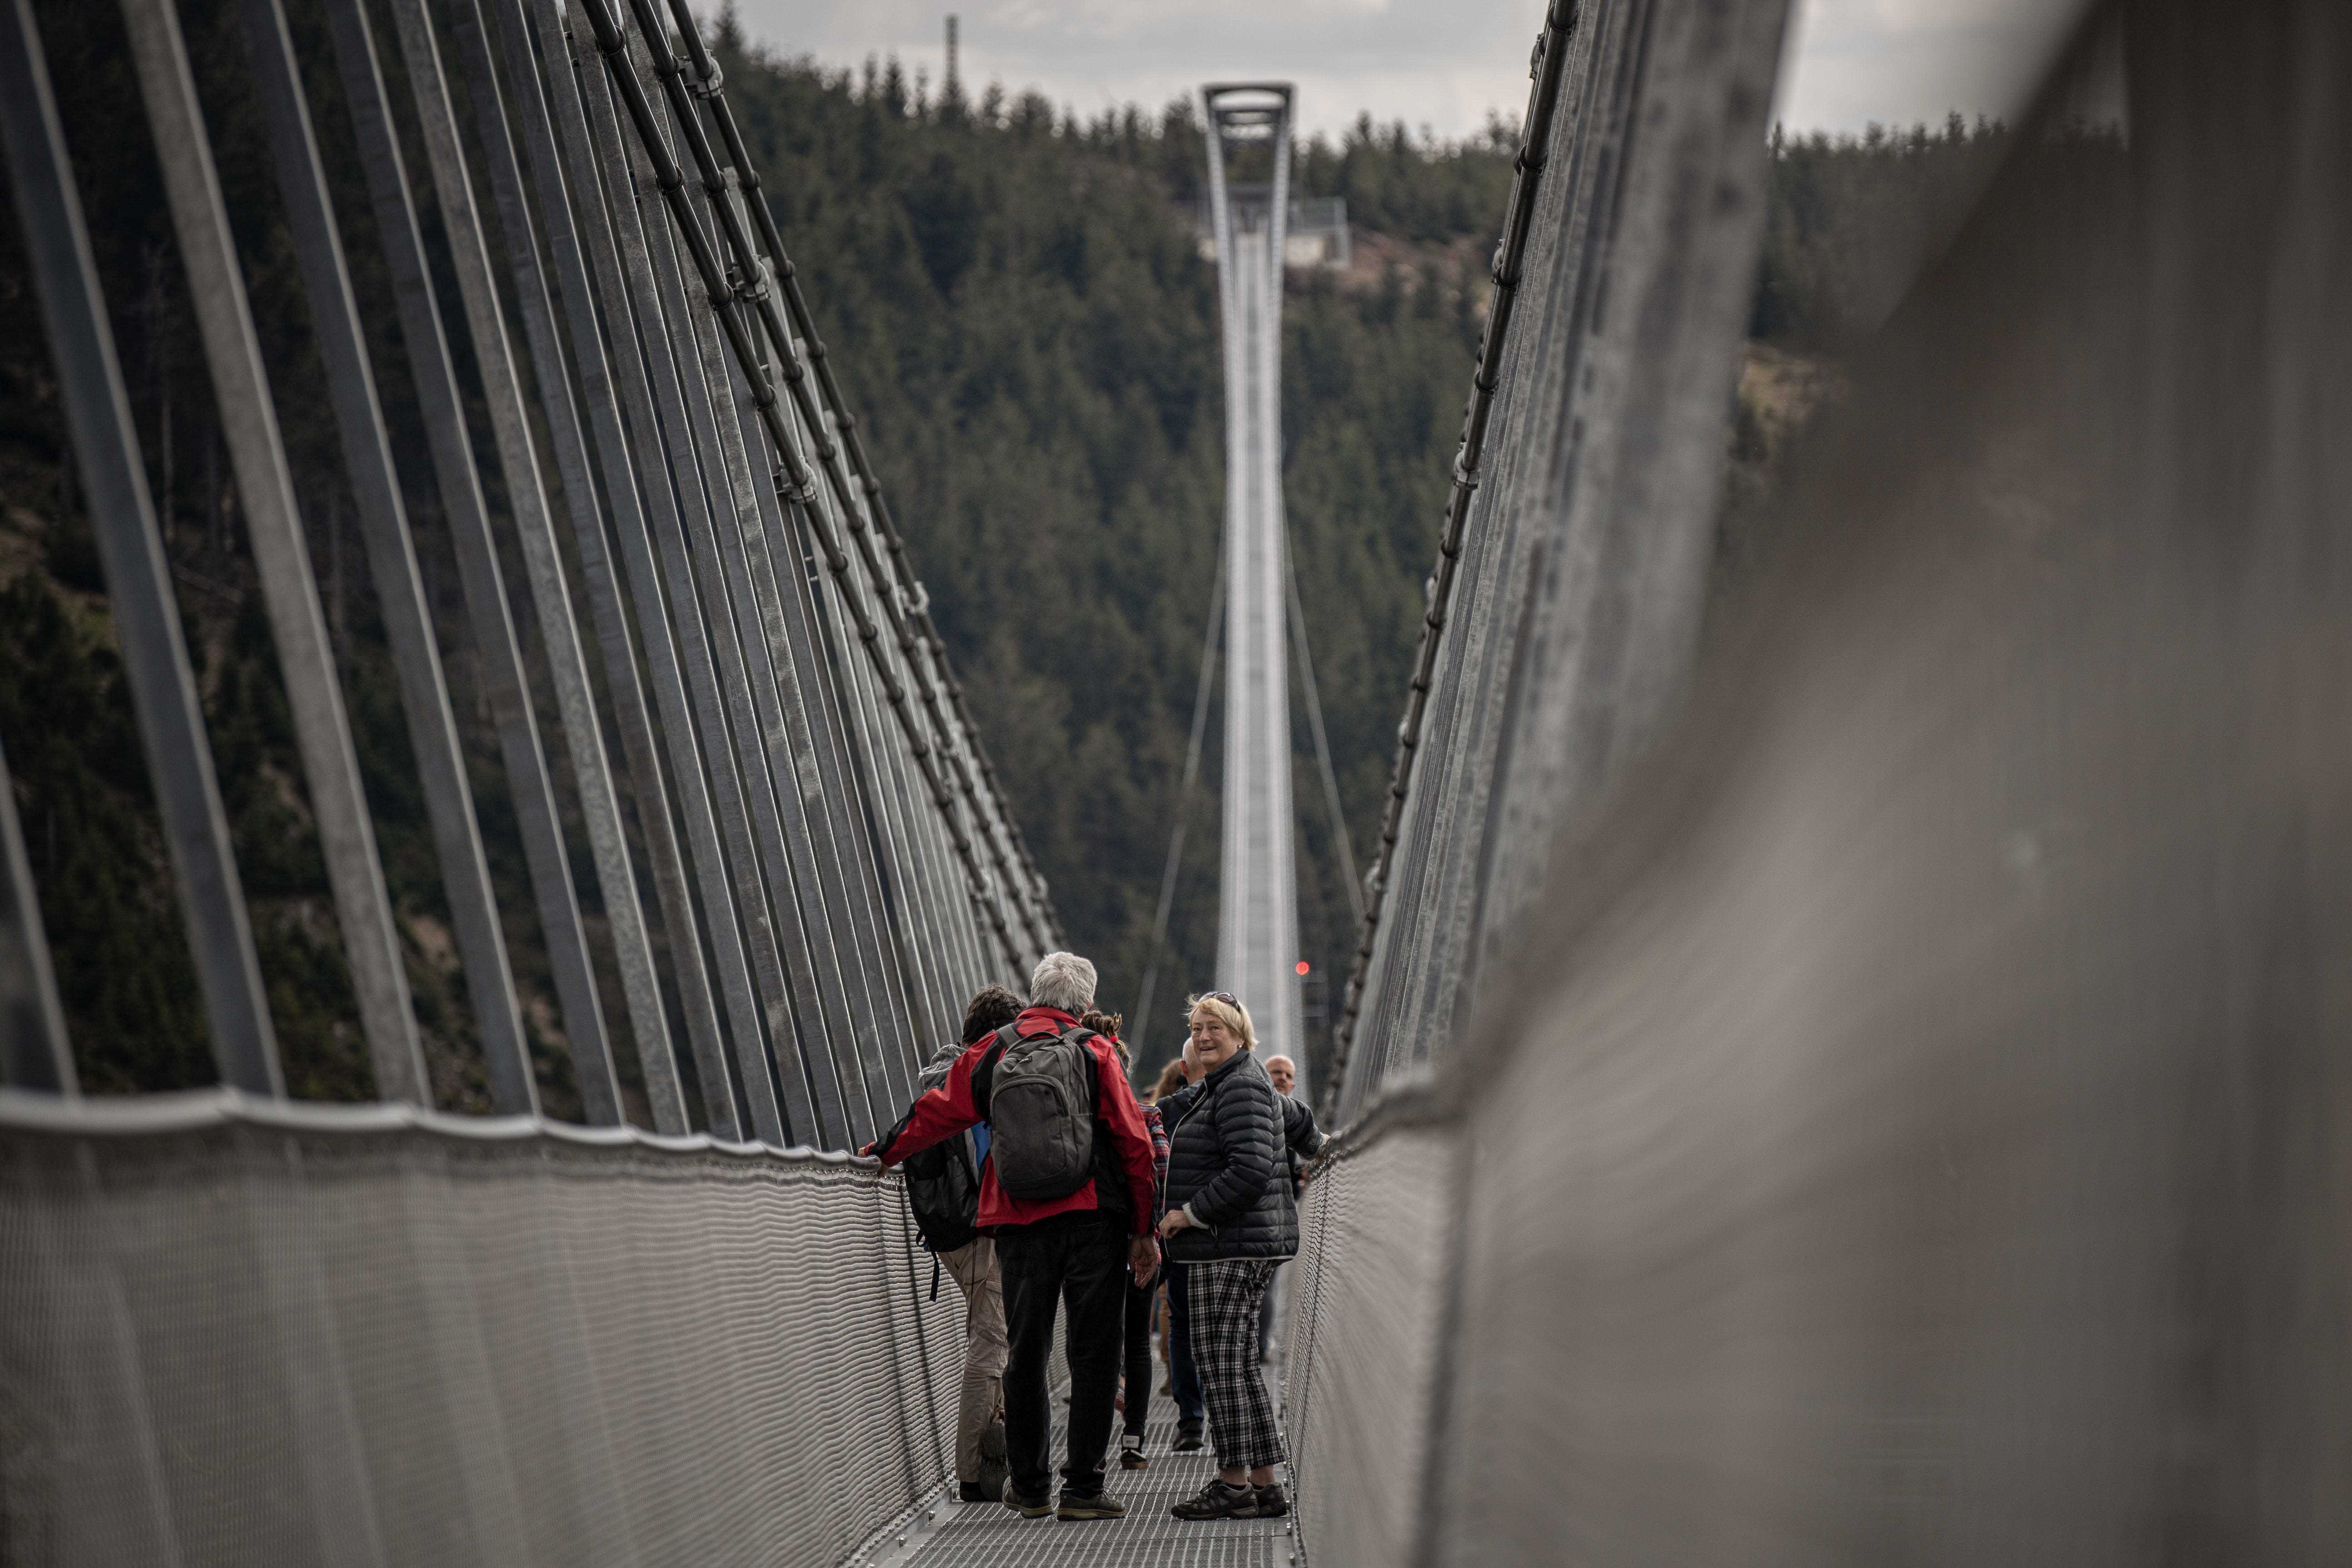 Sky Bridge 721 in Tschechien, die längste Fußgänger-Hängebrücke der Welt